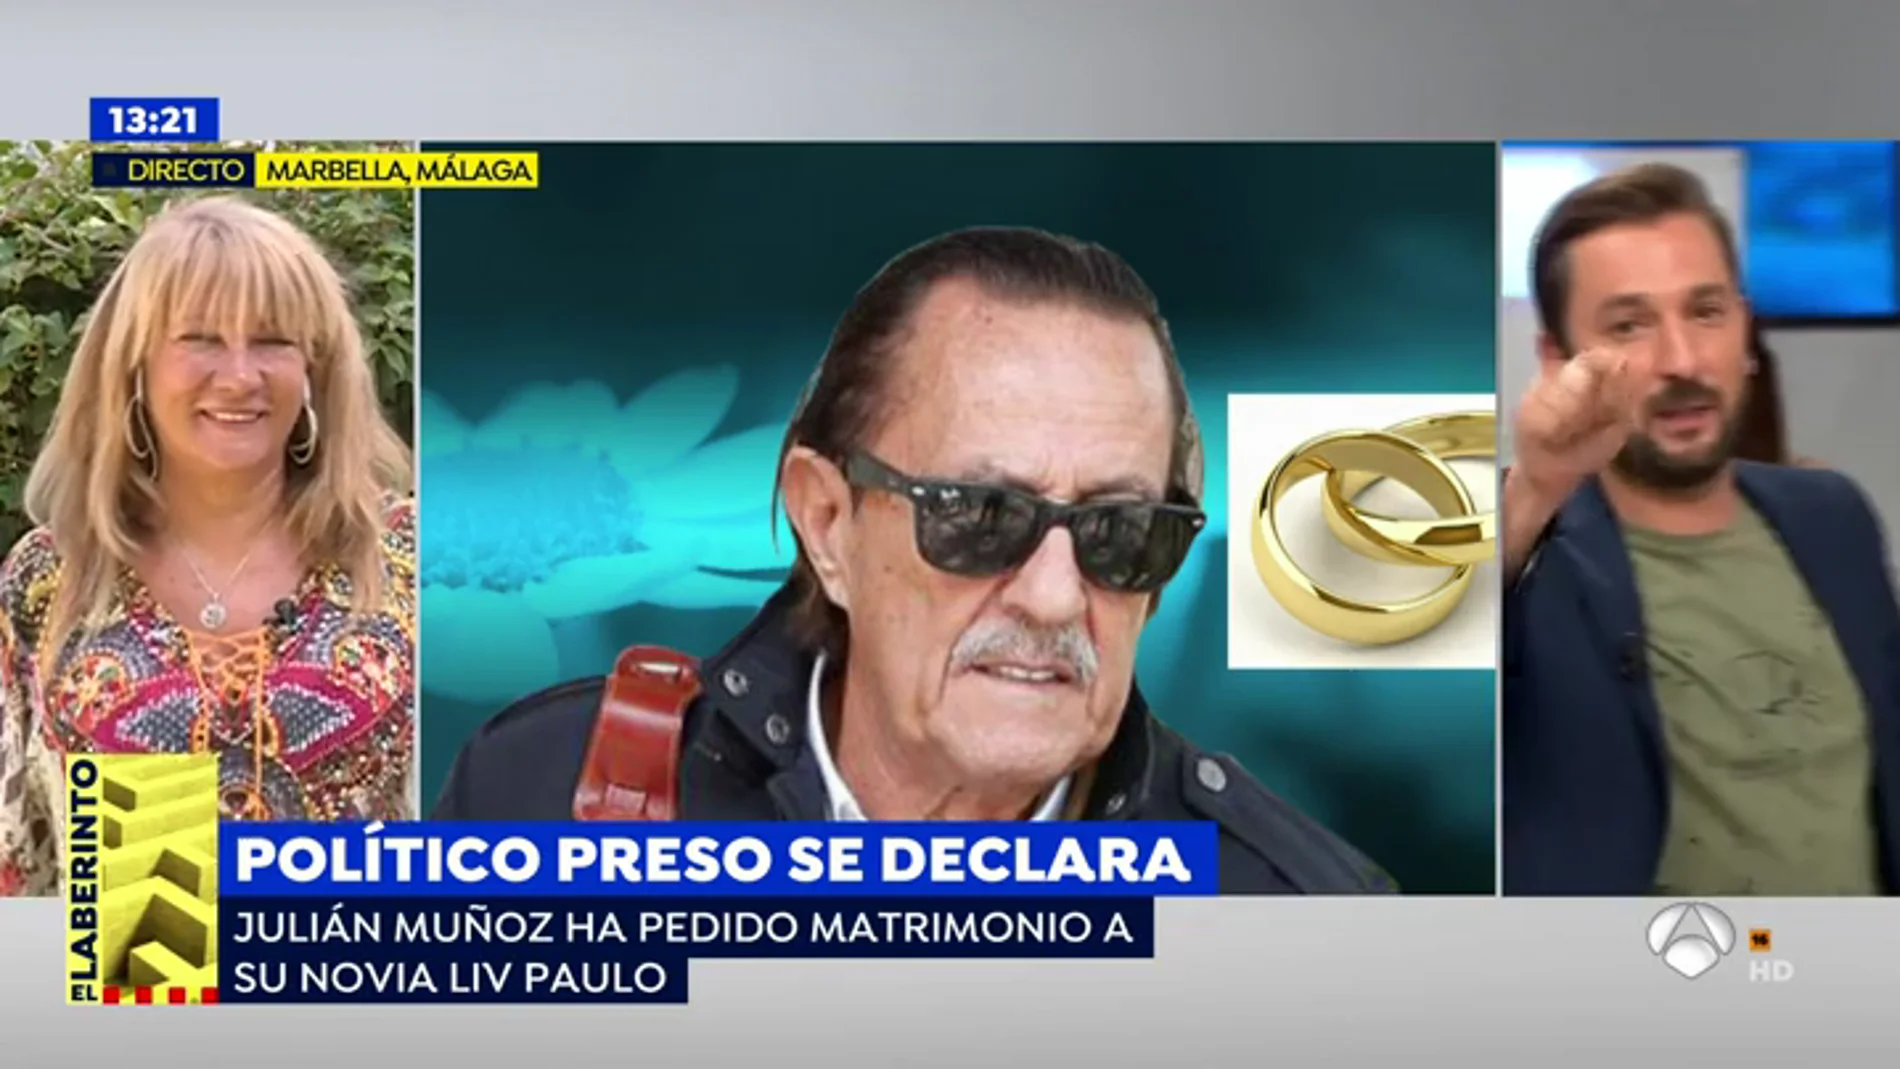 Julián Muñoz pide matrimonio a su novia desde la cárcel